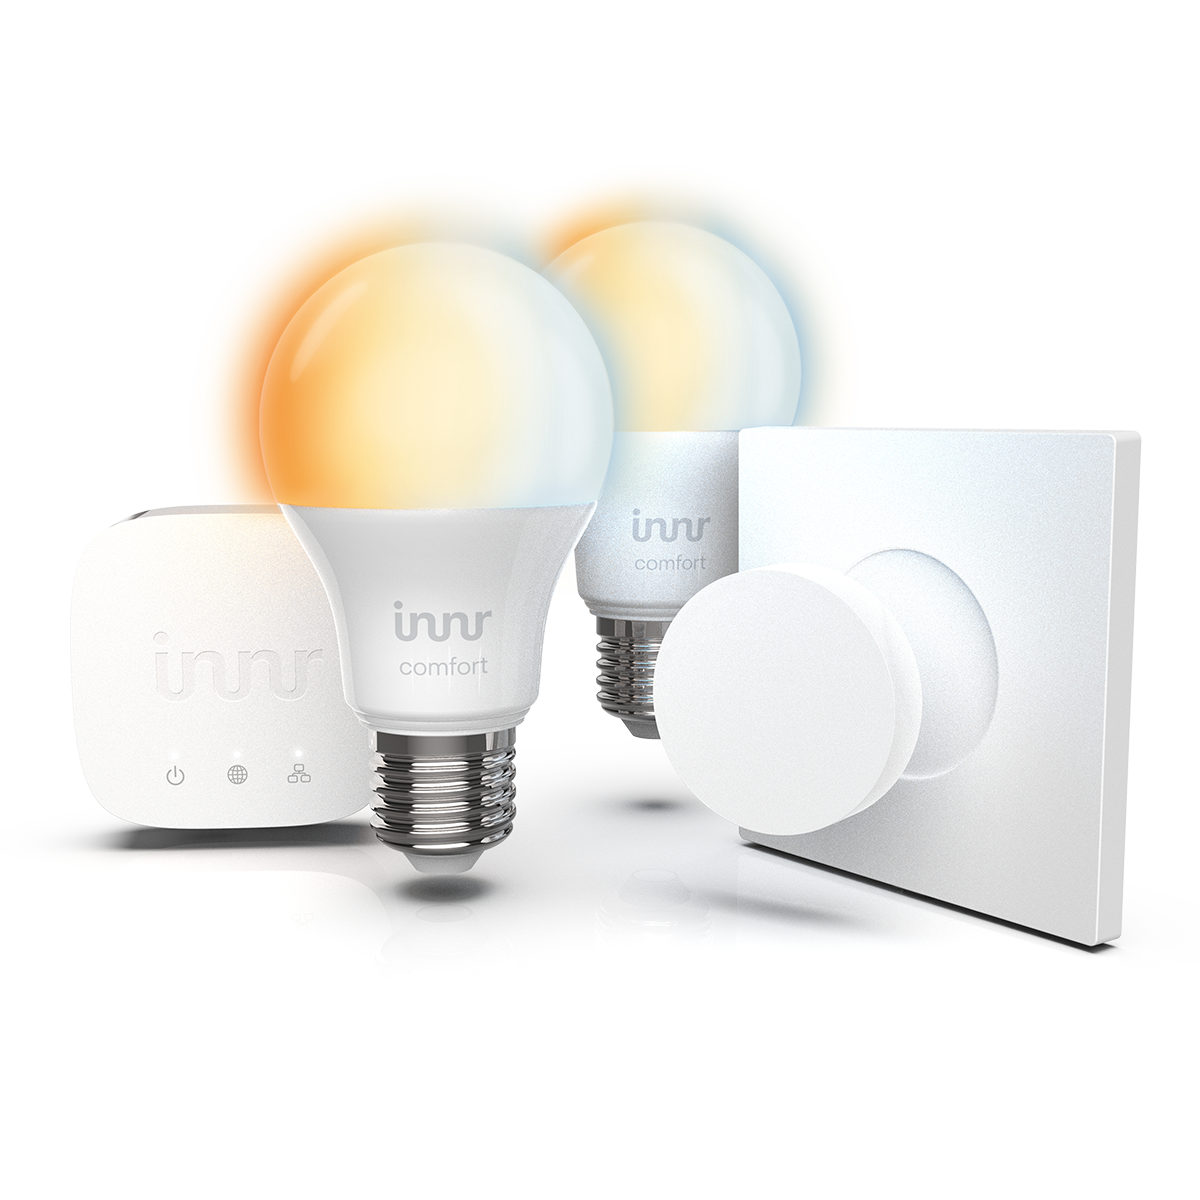 INNR Starter Kit E27 LED Lampe equipment 279 T-2 Birne Hub, - Komfort automation home & 2x SK Komfort Fernbedienung Smart